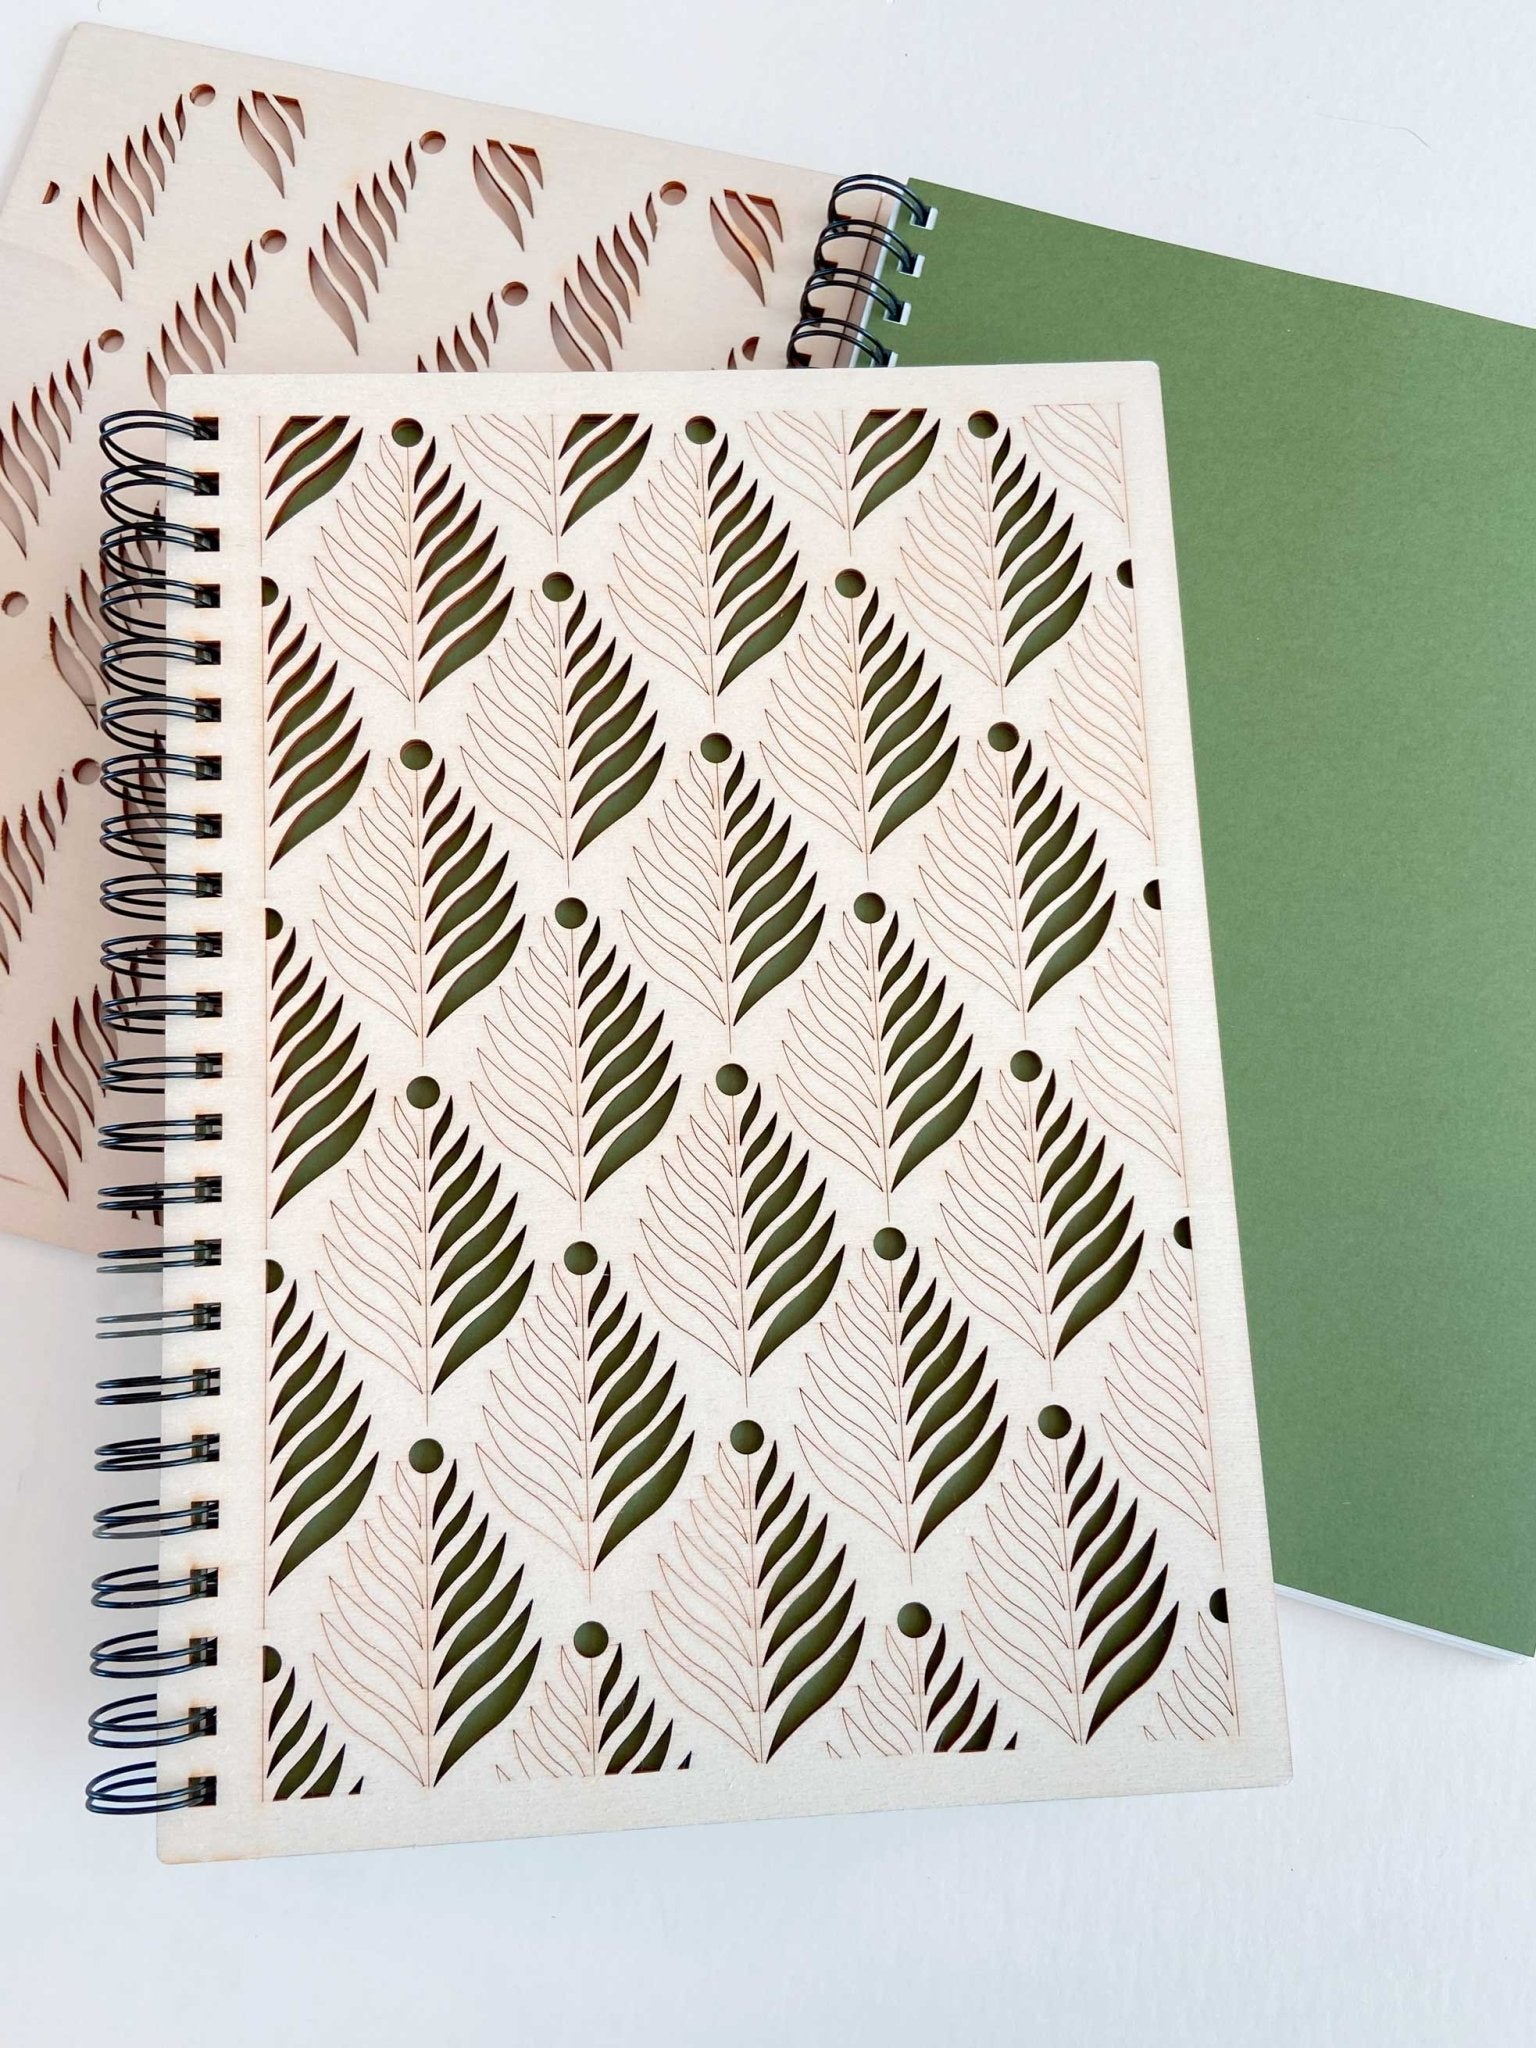 Grand album A4 en bois motif Fougère, notebook personnalisable blanc, ligné ou dessin et aquarelle - Atelier ORYS